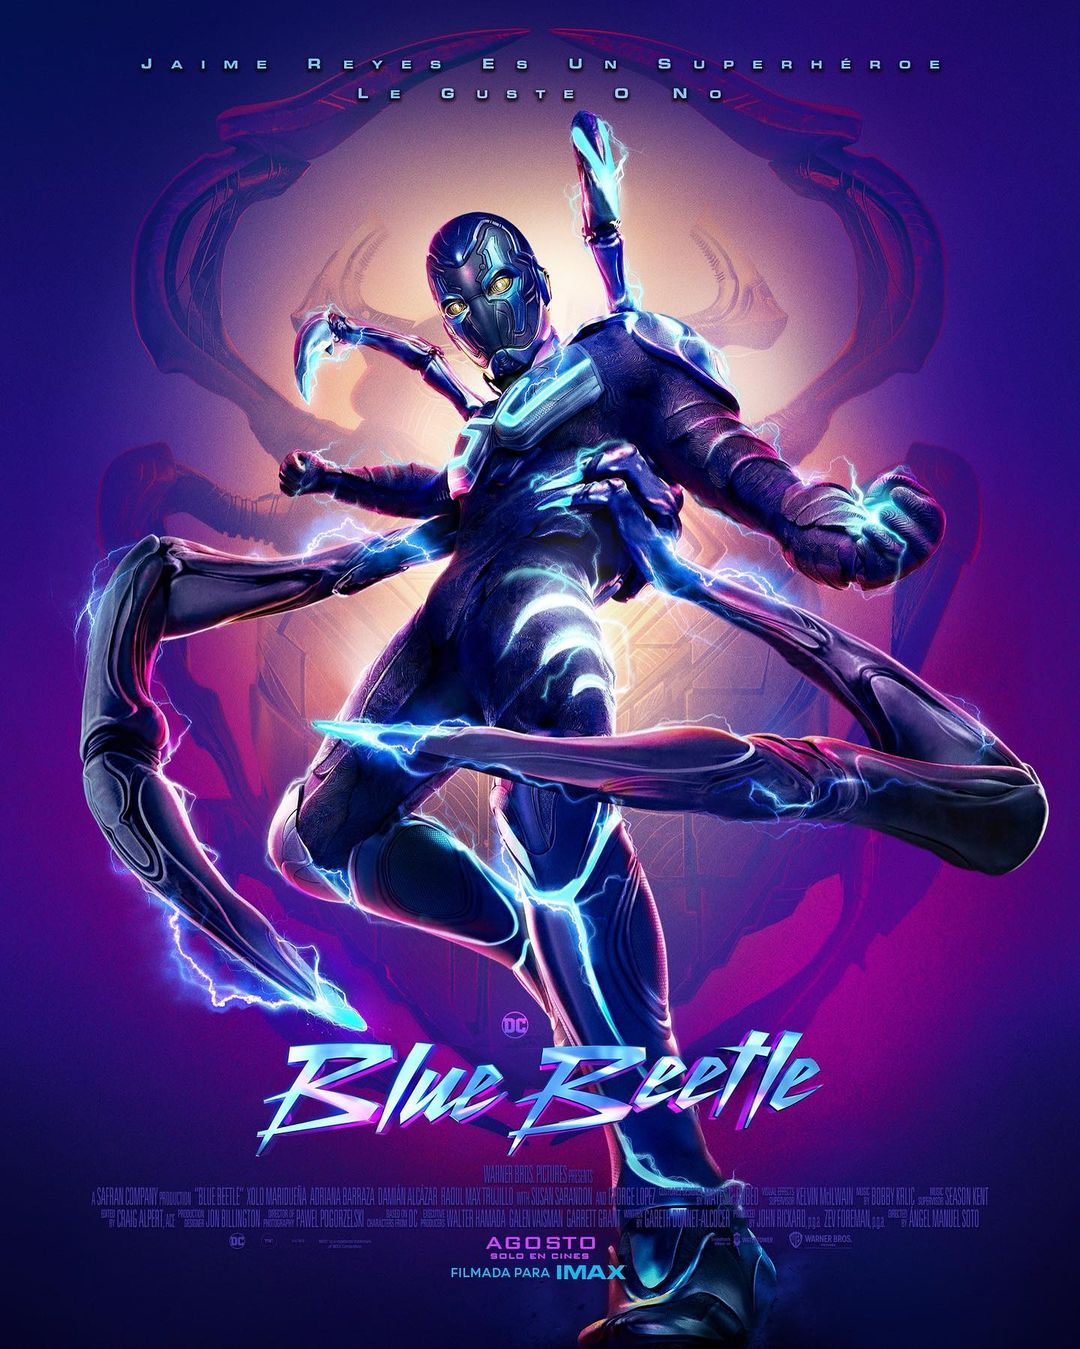 Blue beetle (2) movie by pelchel1000 on DeviantArt